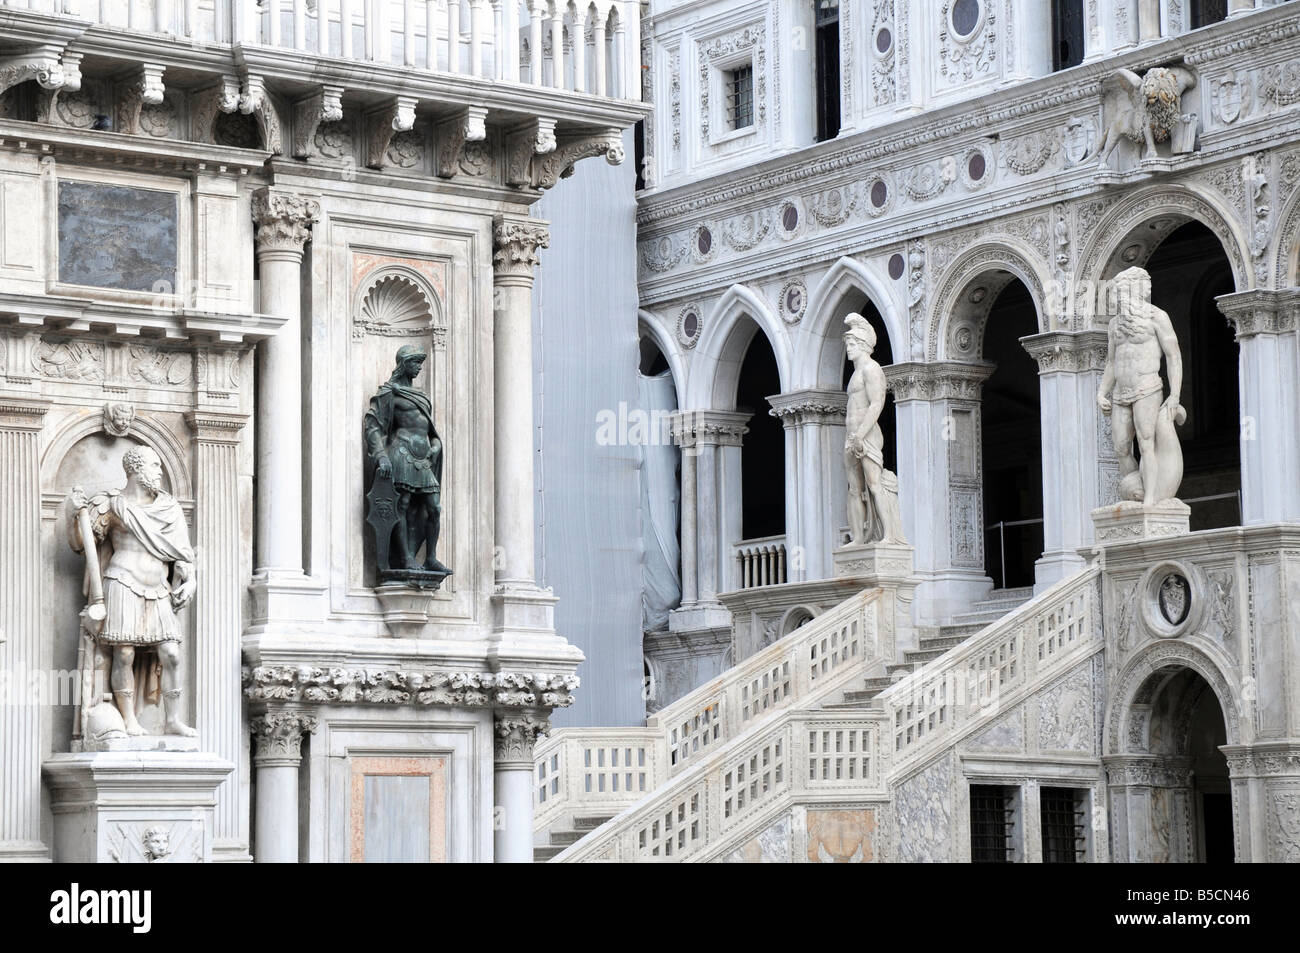 Arco Foscari, de triomphe face à la Scala dei Giganti, cour de du palais des Doges, Venise, Italie Banque D'Images